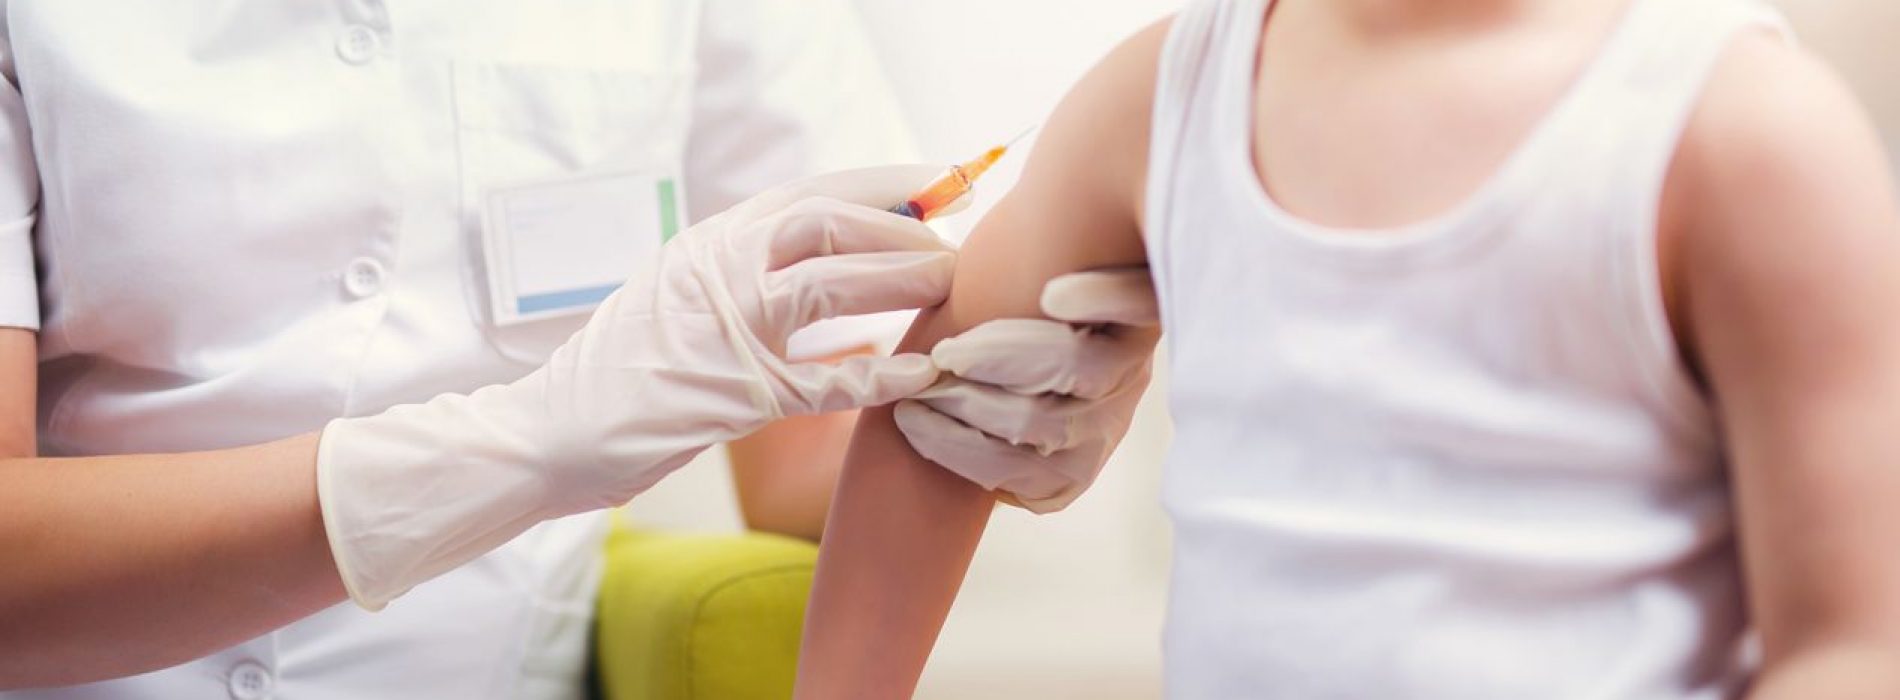 Vacuna contra la influenza ya está disponible para la población vulnerable: Salud